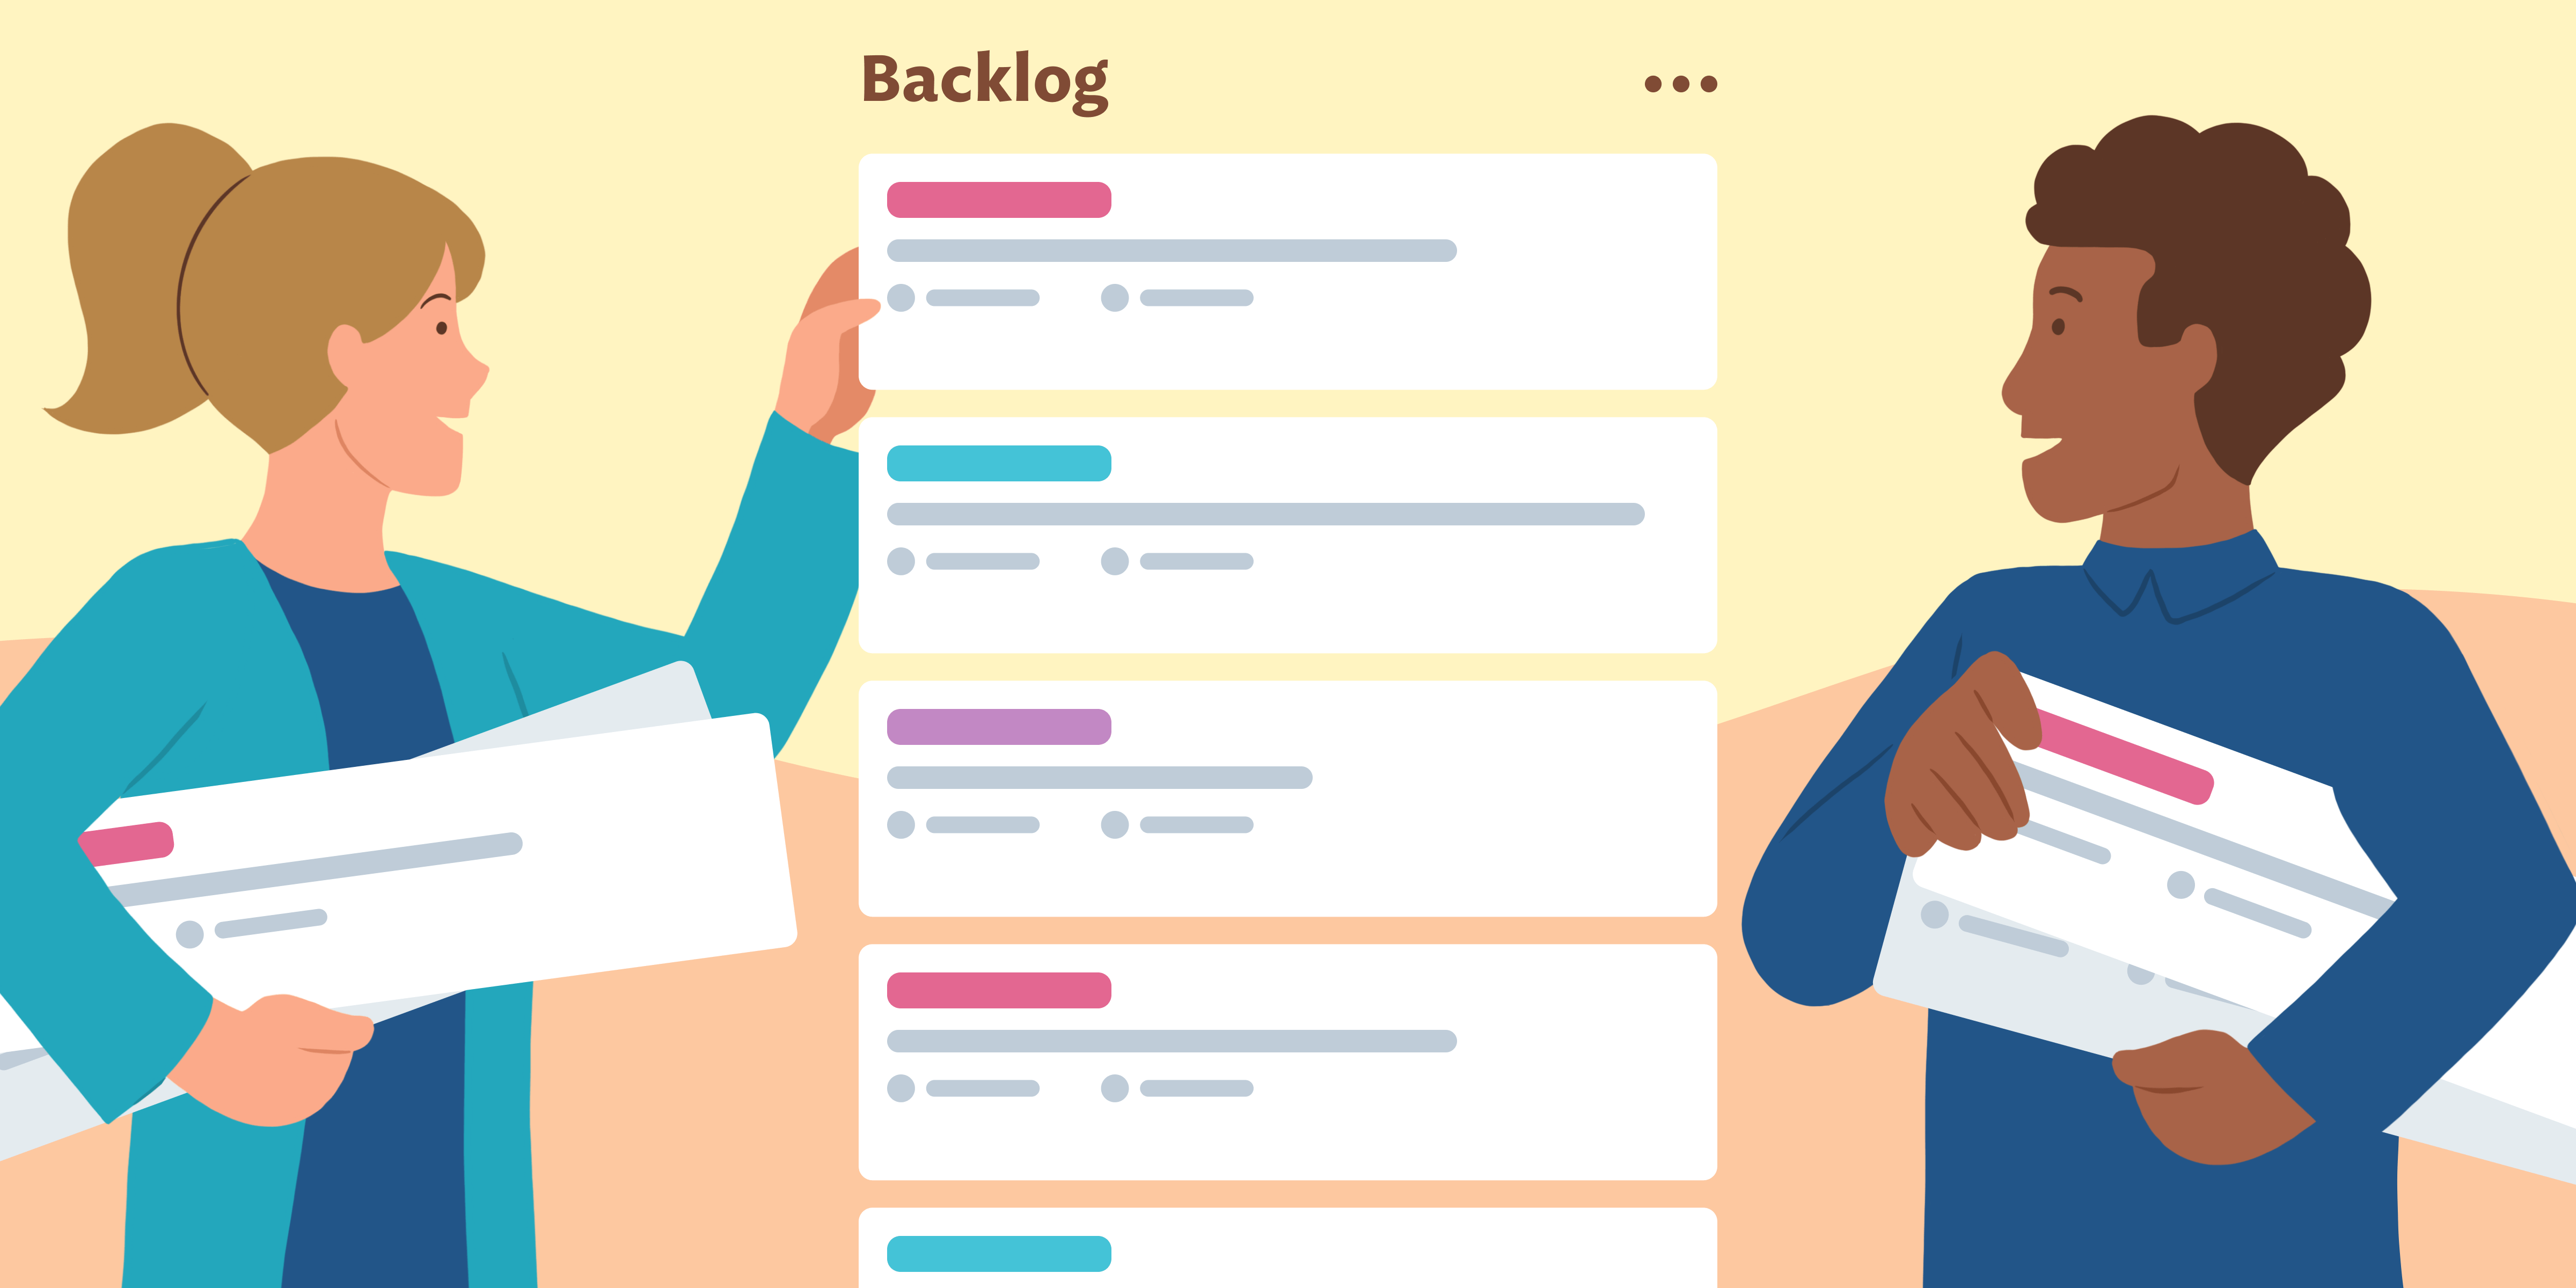 Backlog giúp theo dõi tiến độ công việc từng thành viên